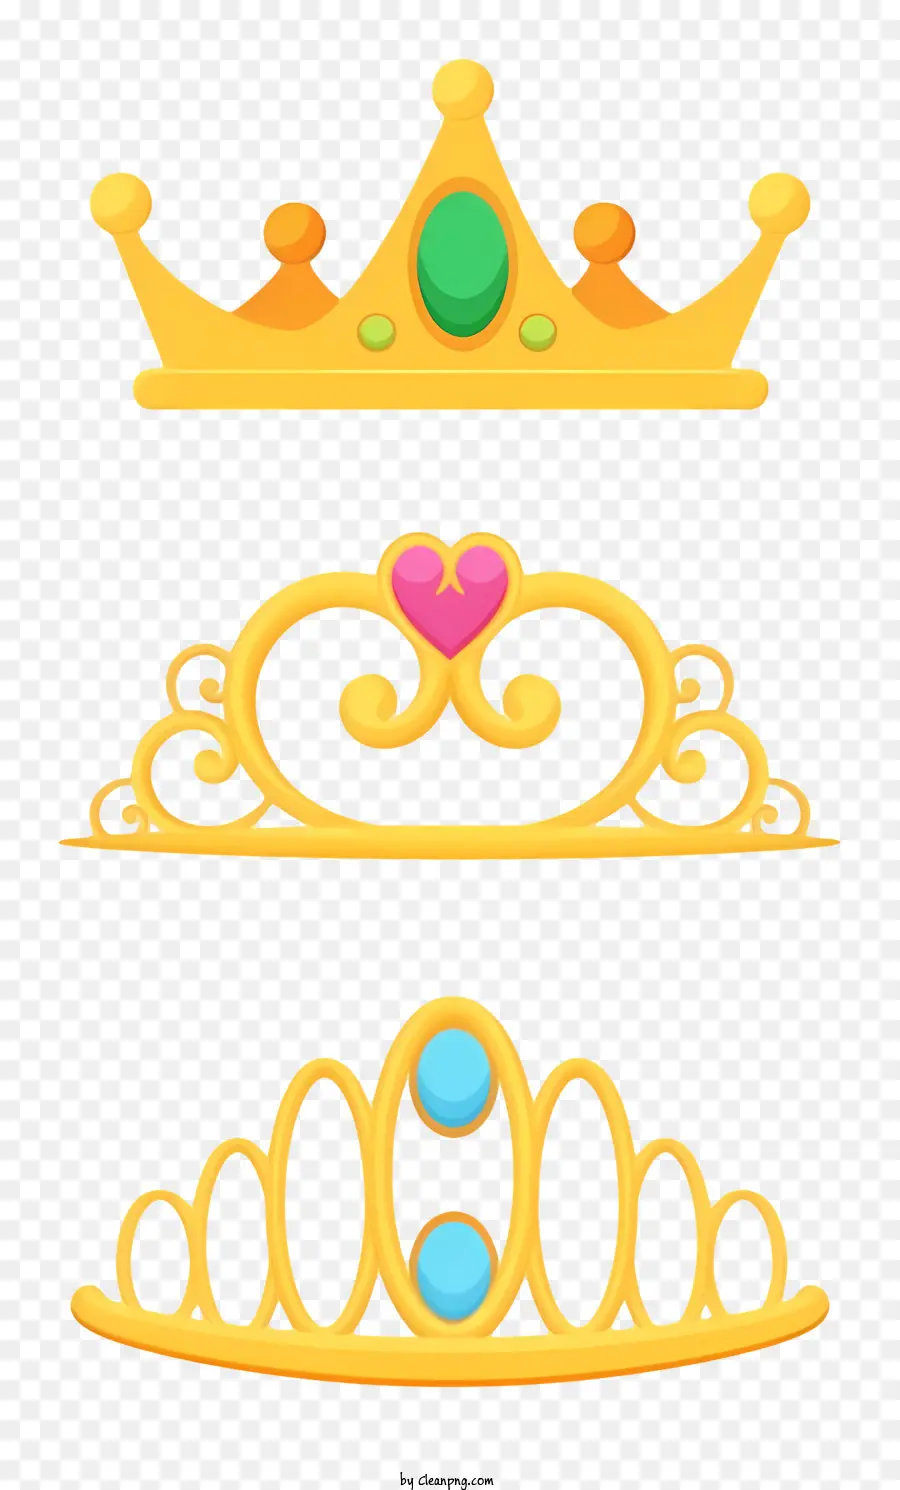 Goldkronen Juwelenkronen Kronenformen Kronengrößen Kronenfarben - Drei Goldkronen unterschiedlicher Form, Größe und Farbe